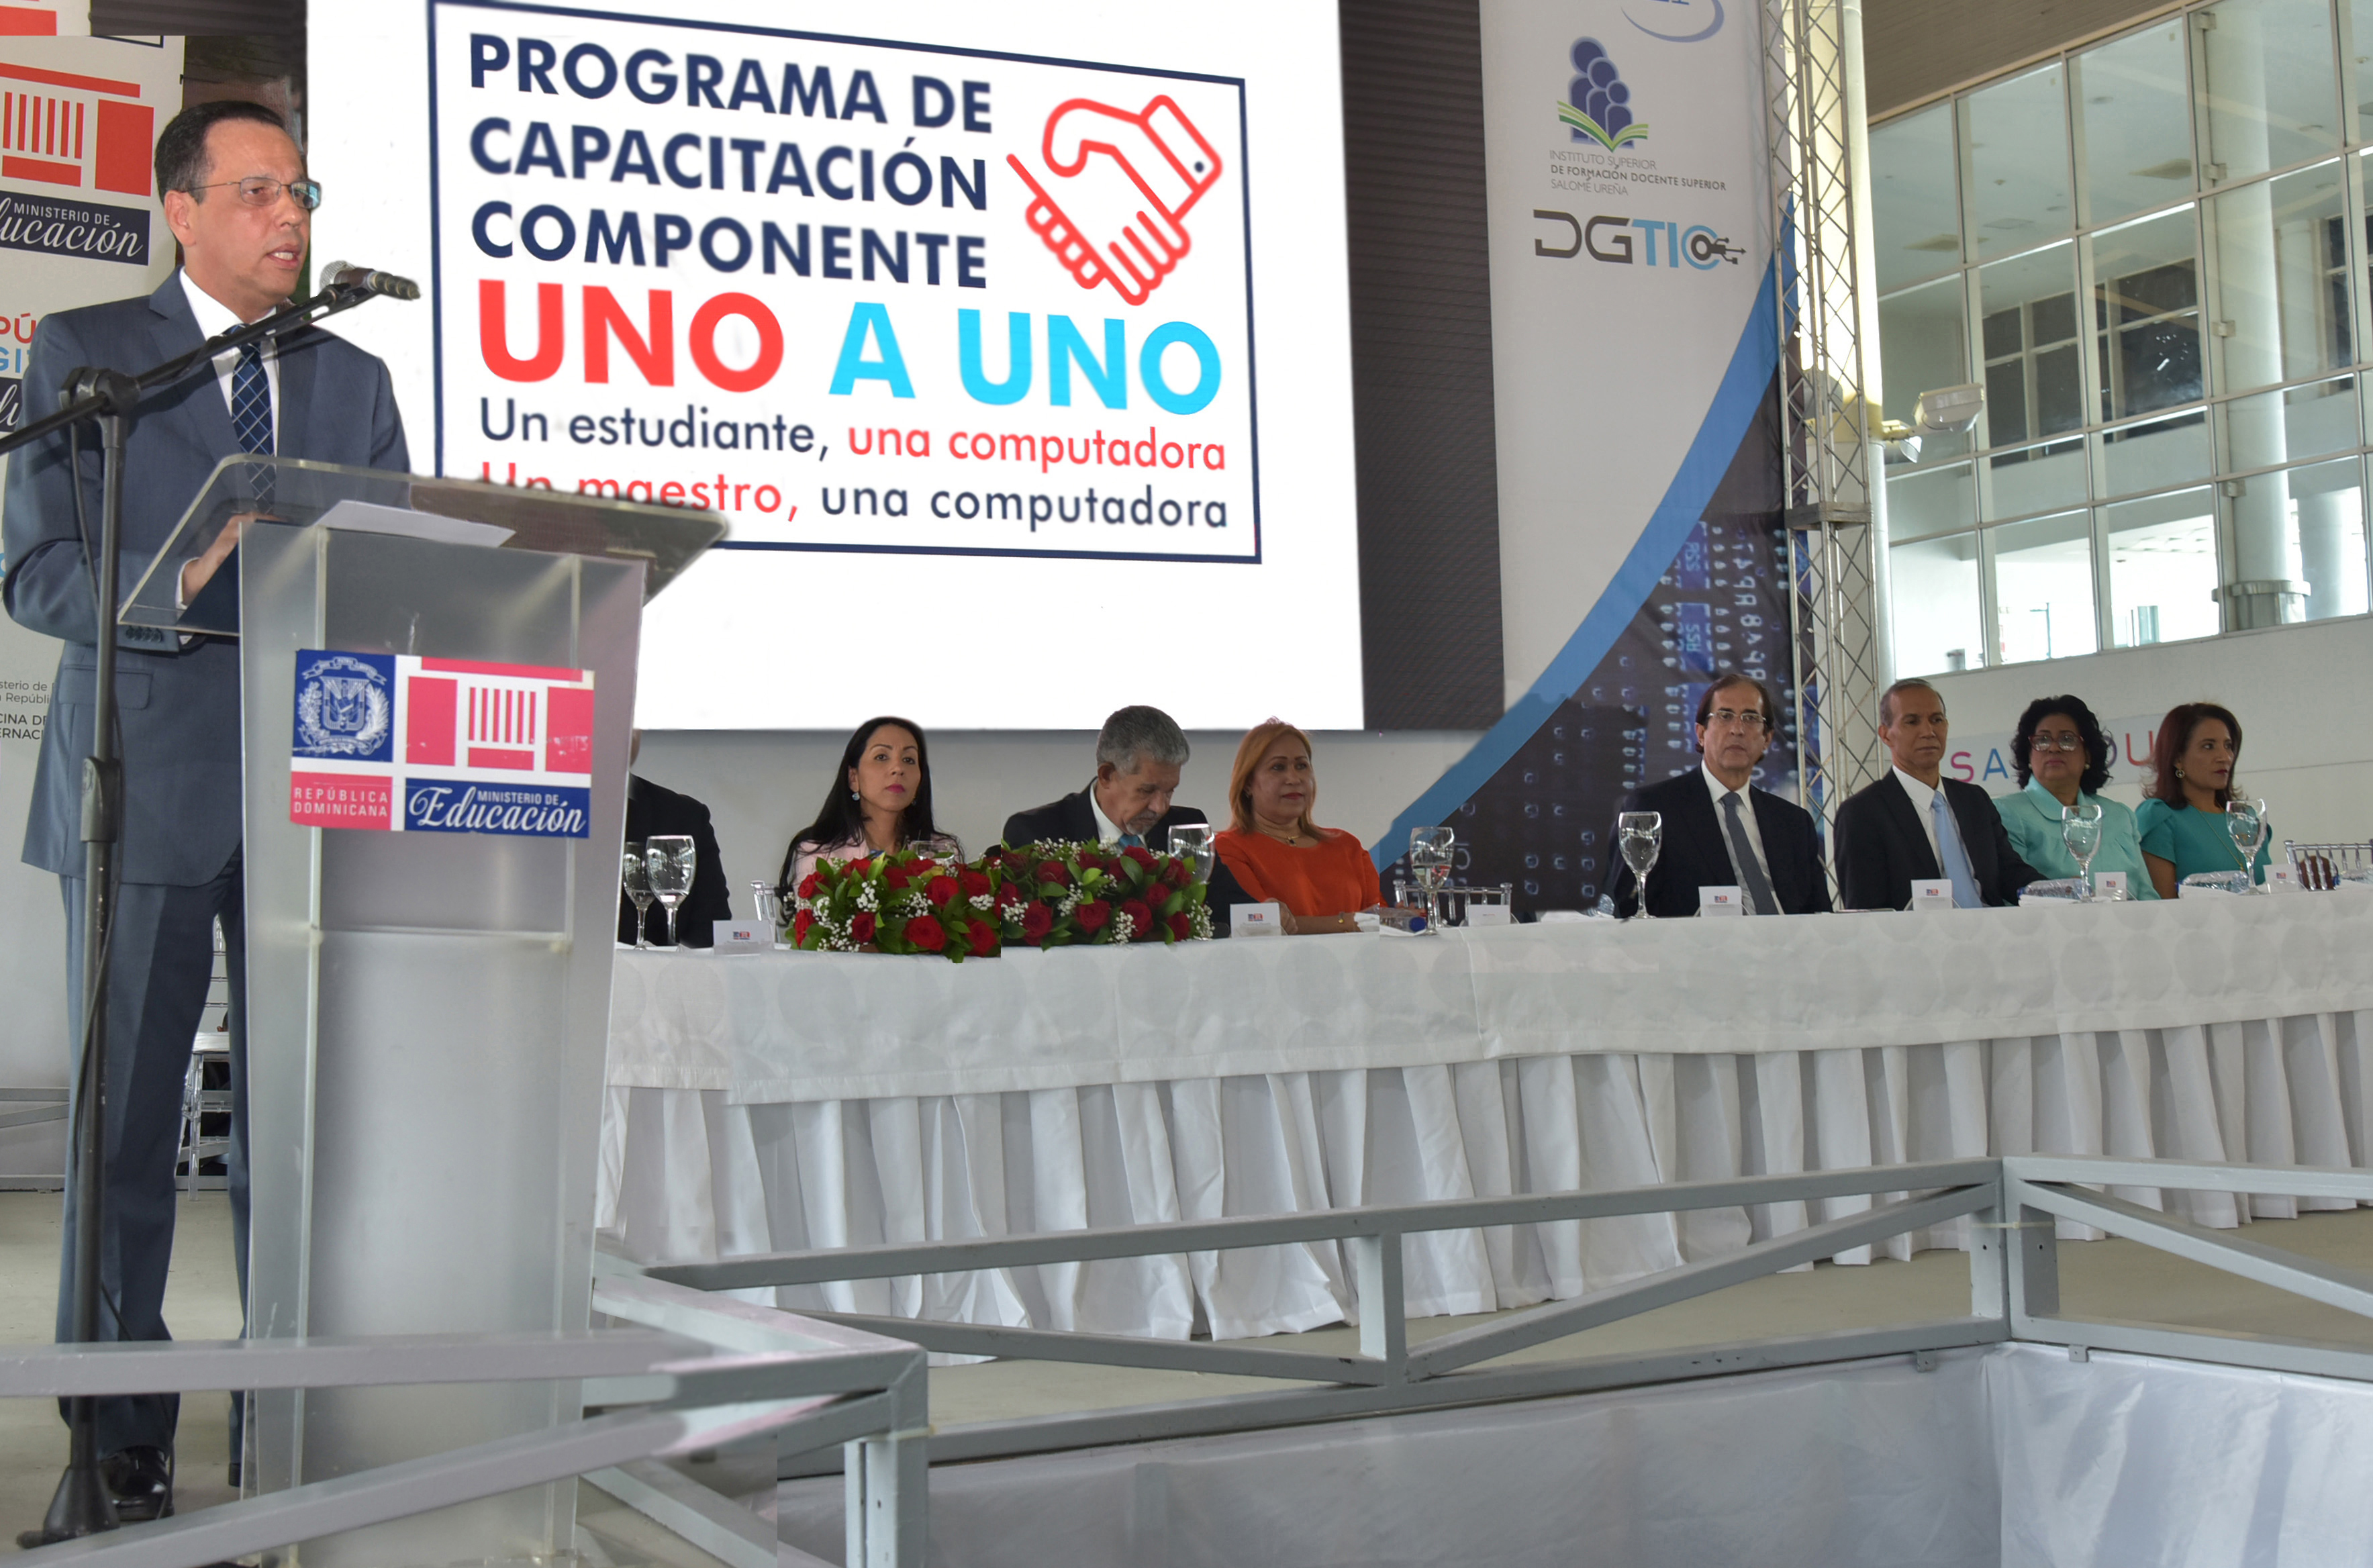  imagen Ministro detrás de podium durante su discurso en acto de bienvenida al Programa Uno a Uno en Puerto de Sans Souci. 